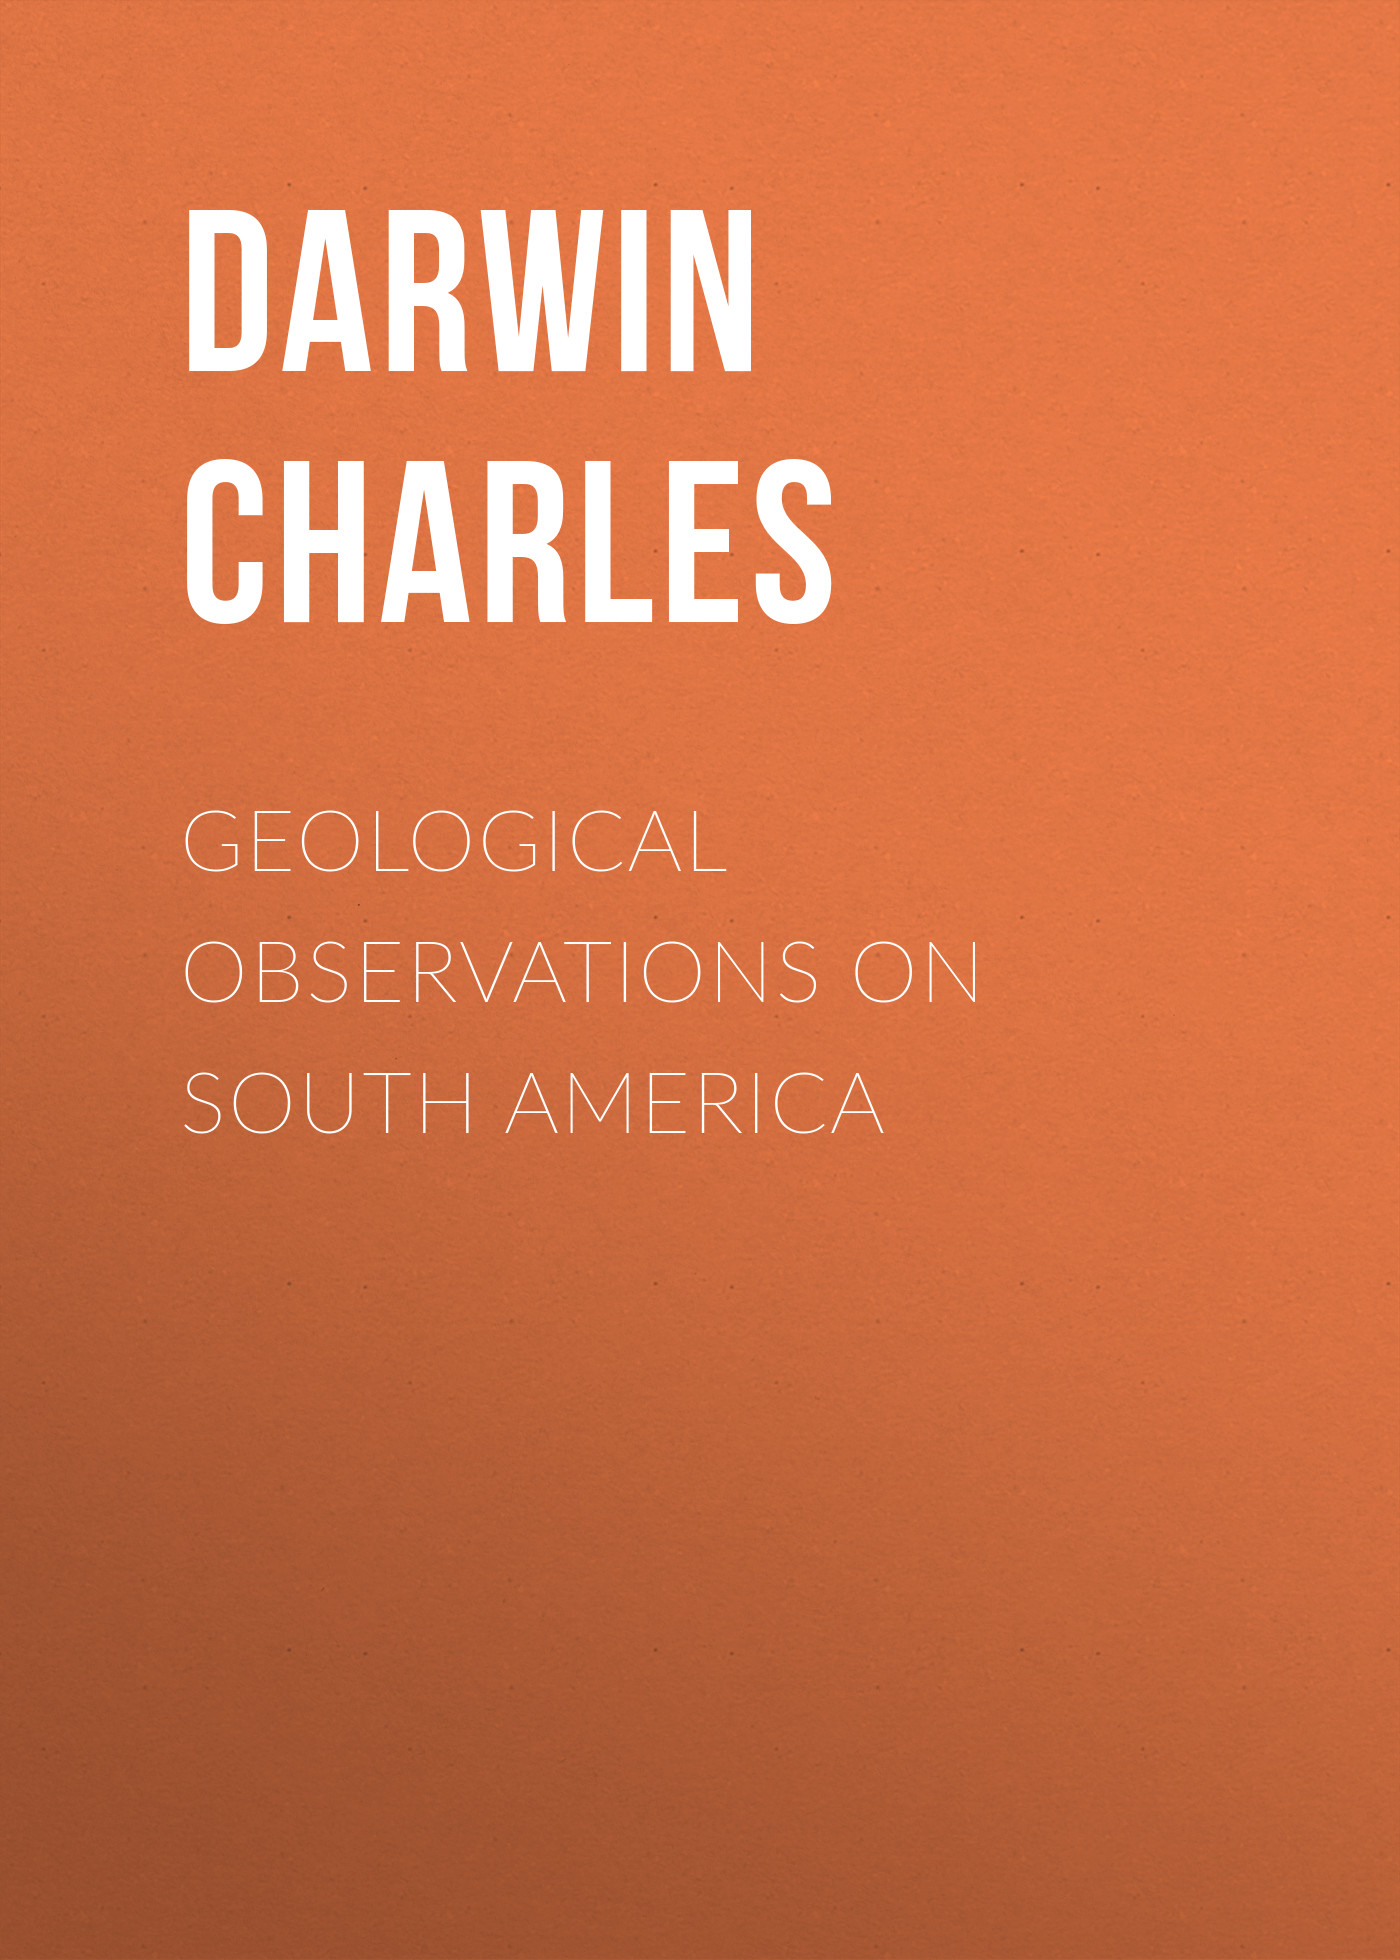 Книга Geological Observations on South America из серии , созданная Charles Darwin, может относится к жанру Зарубежная старинная литература, Зарубежная классика. Стоимость электронной книги Geological Observations on South America с идентификатором 25091780 составляет 0 руб.